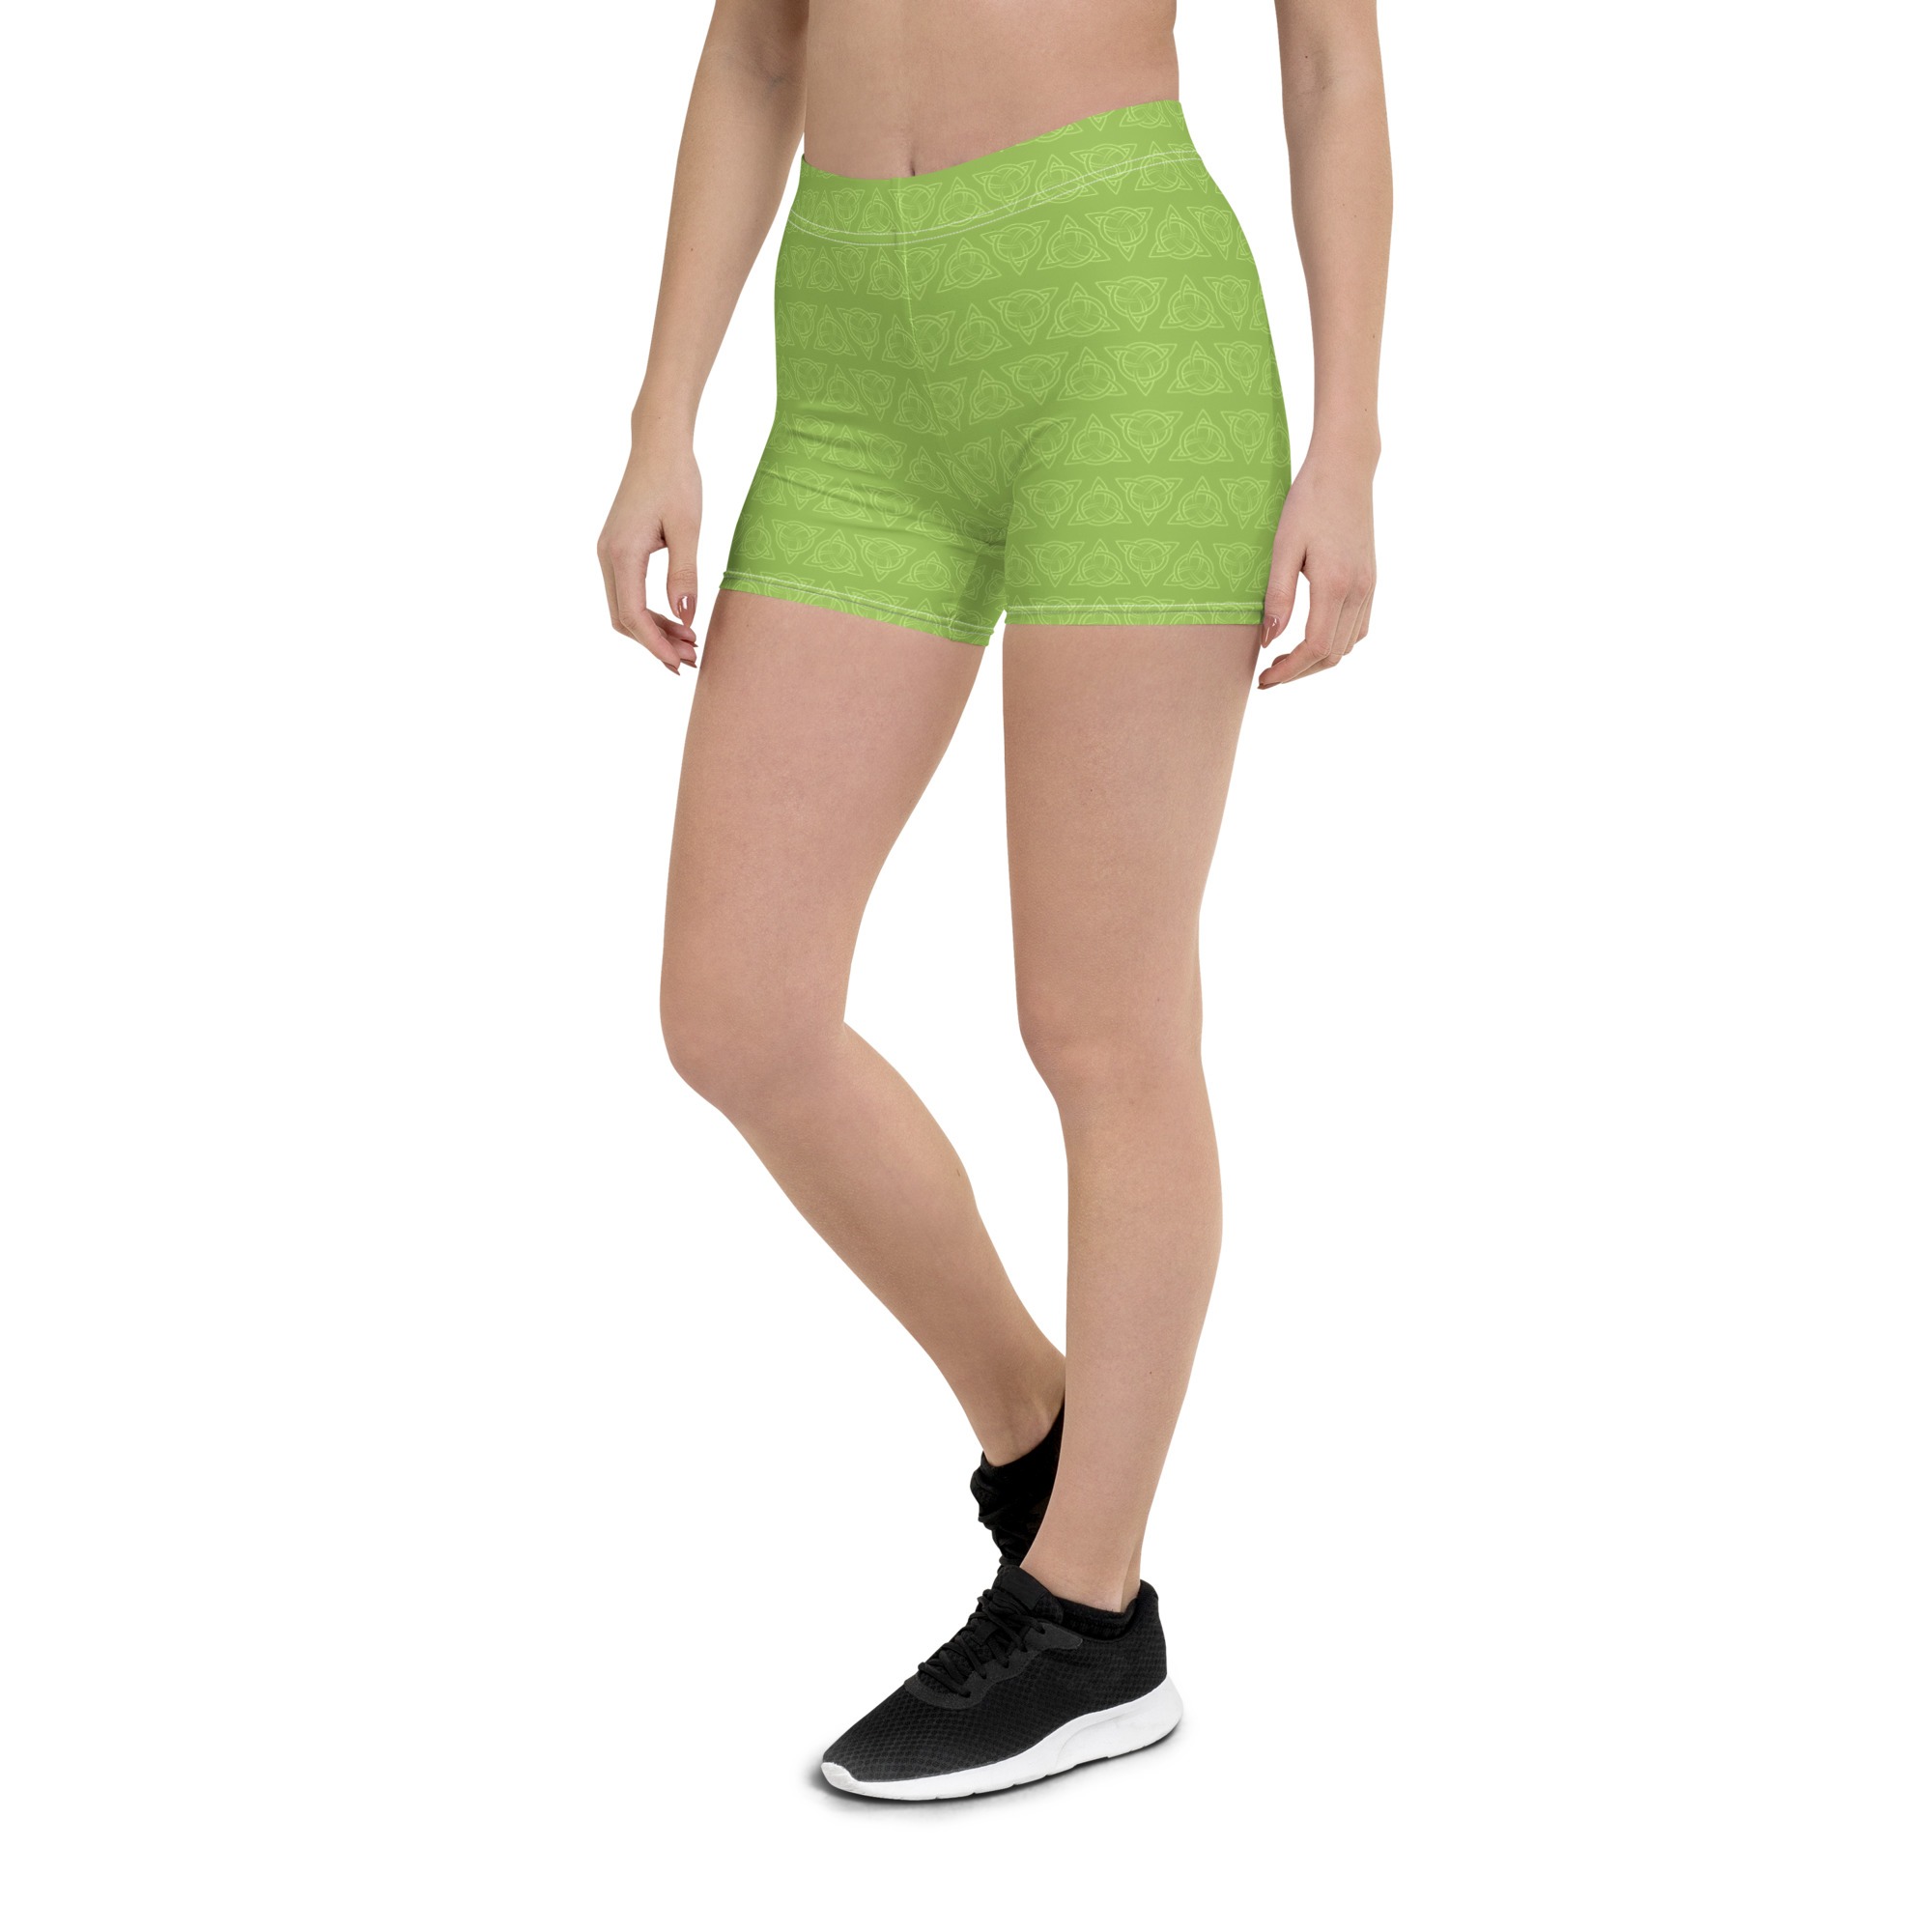 Green Celtic Triquetra Shorts